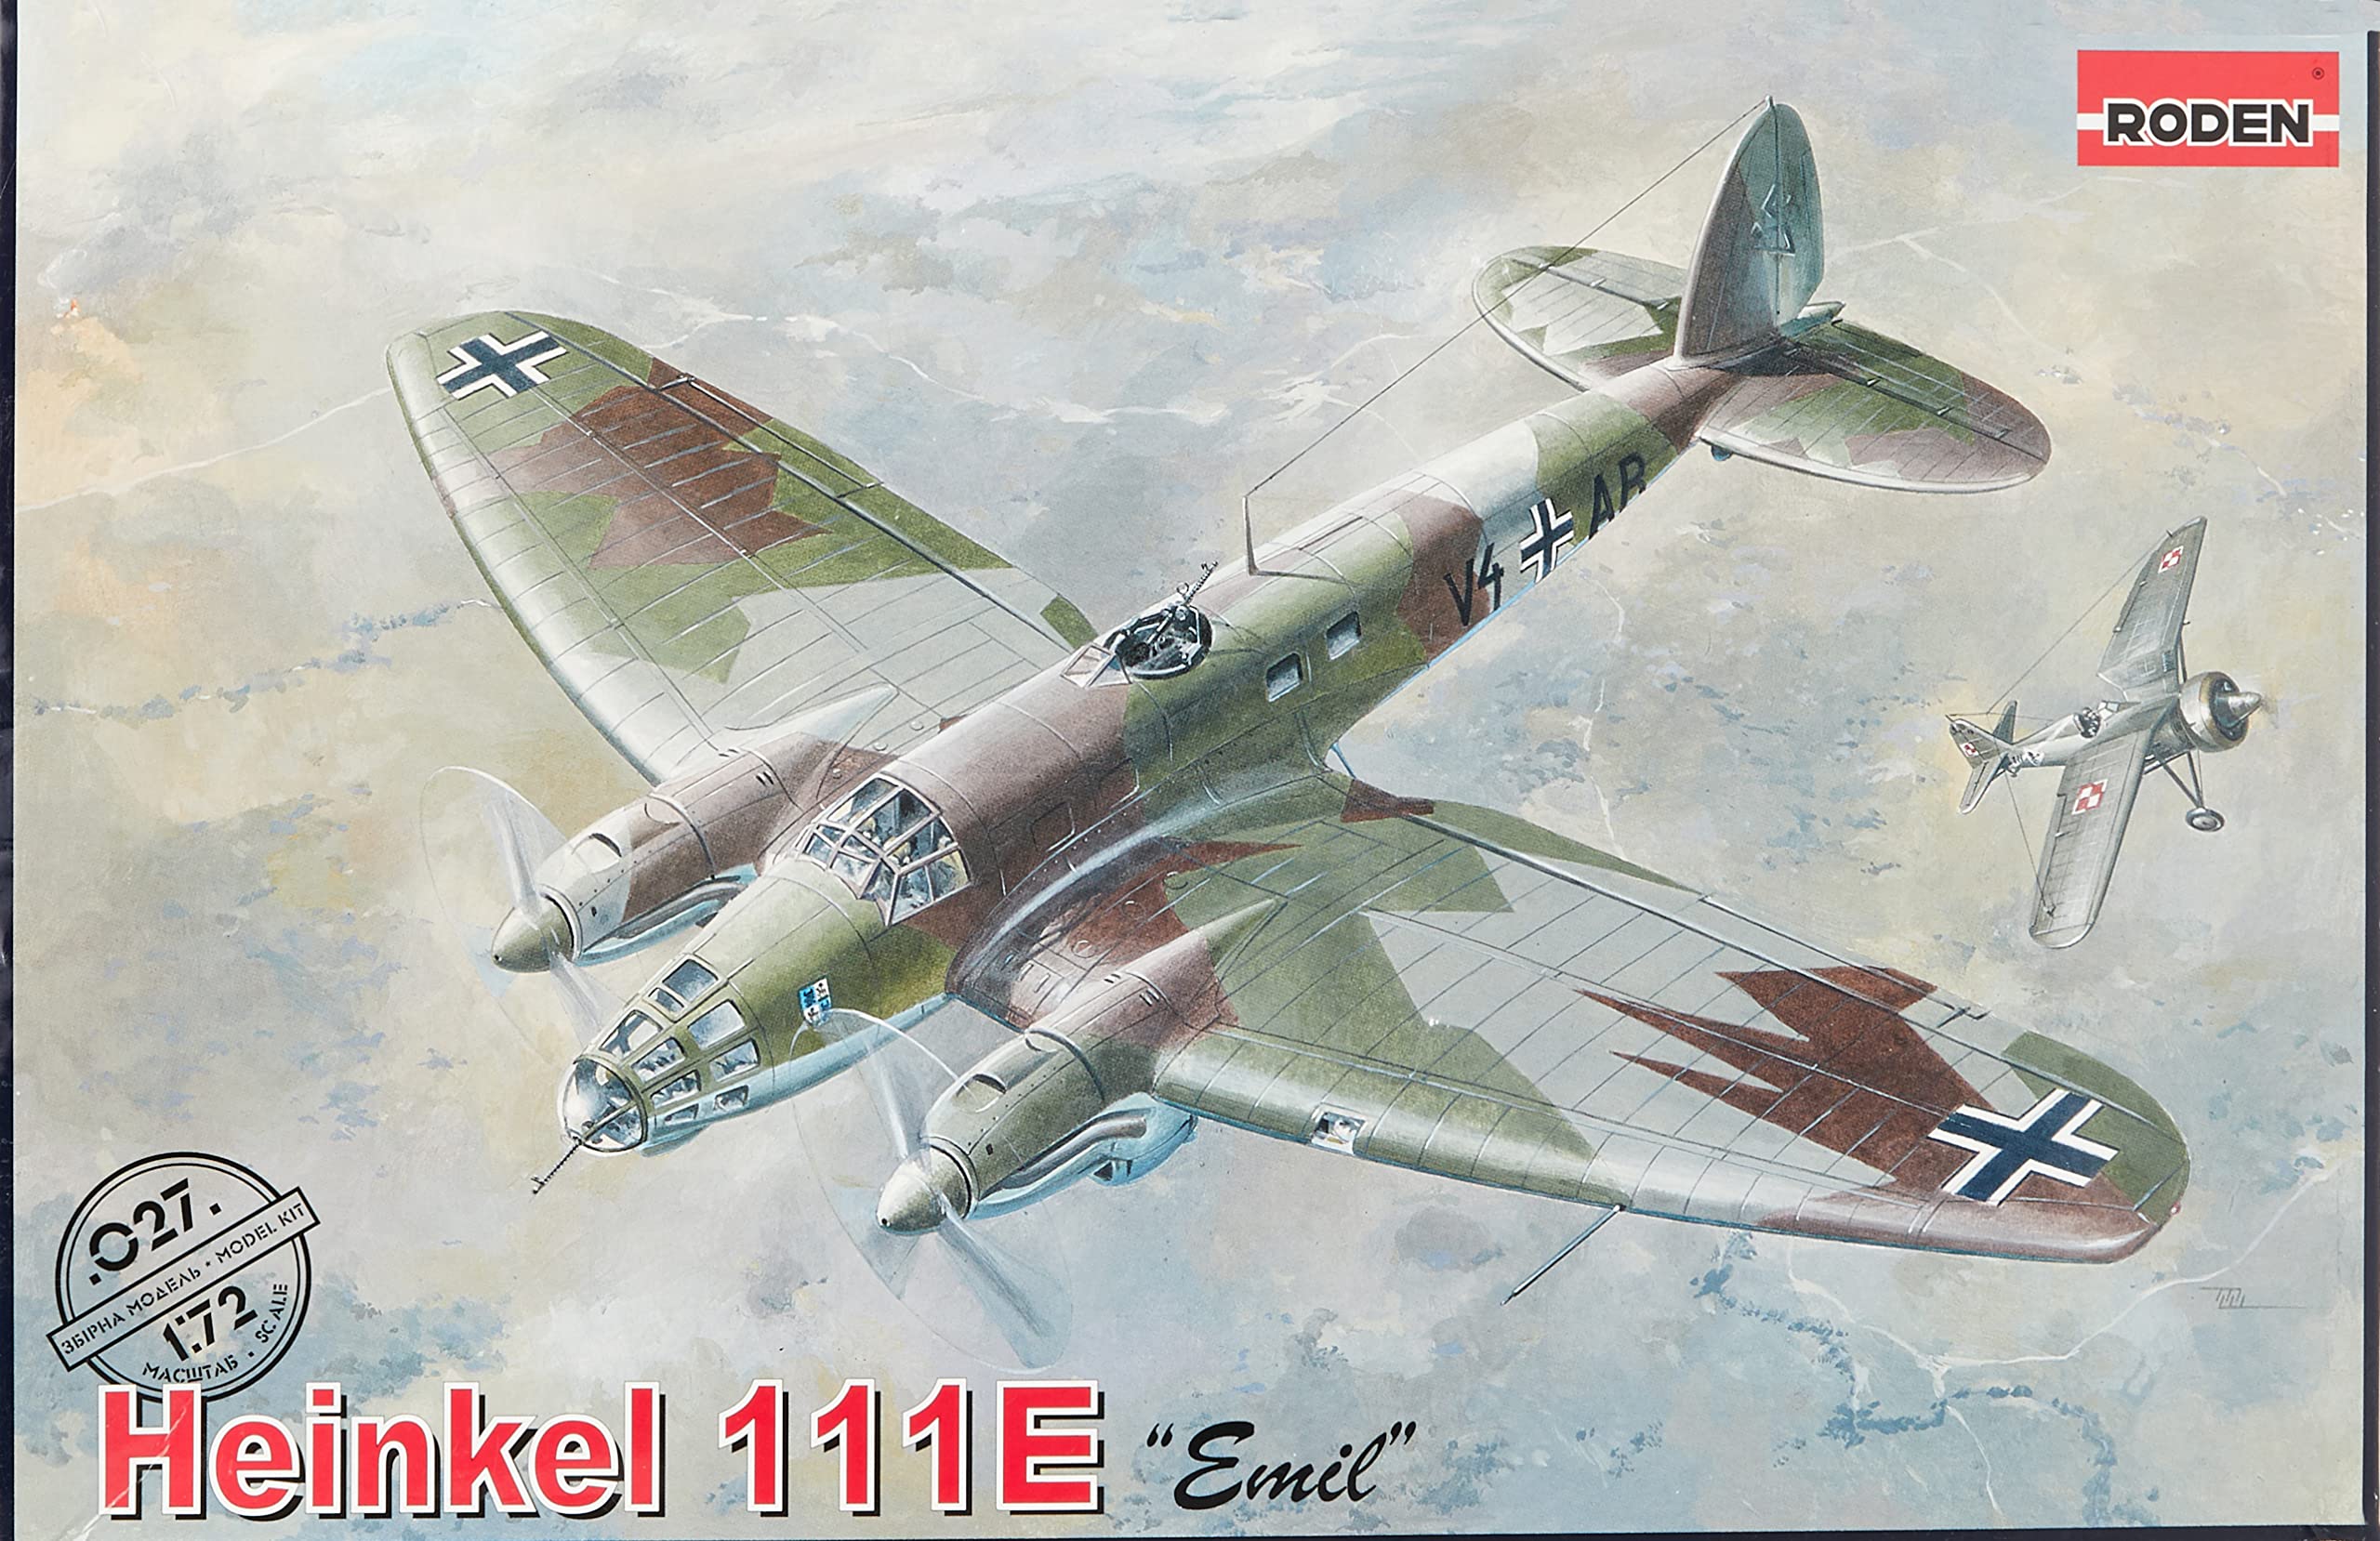 Roden Heinkel 111E 1:72 Scale Model Kit